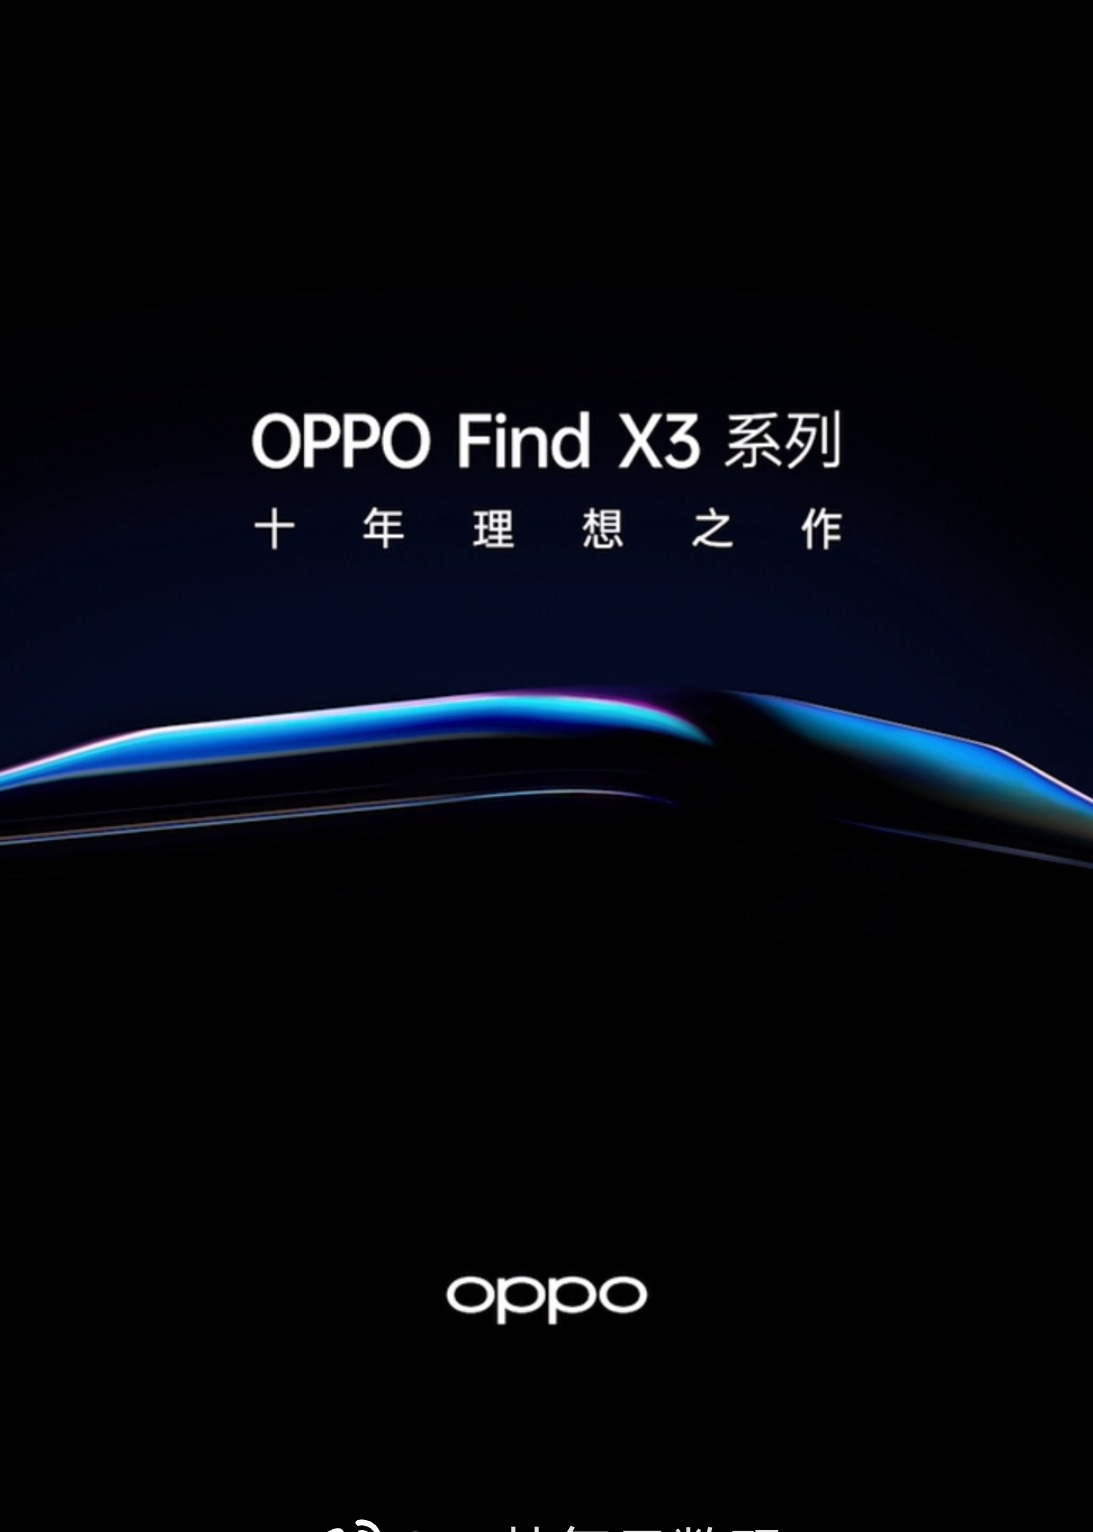 oppox3发布会图片